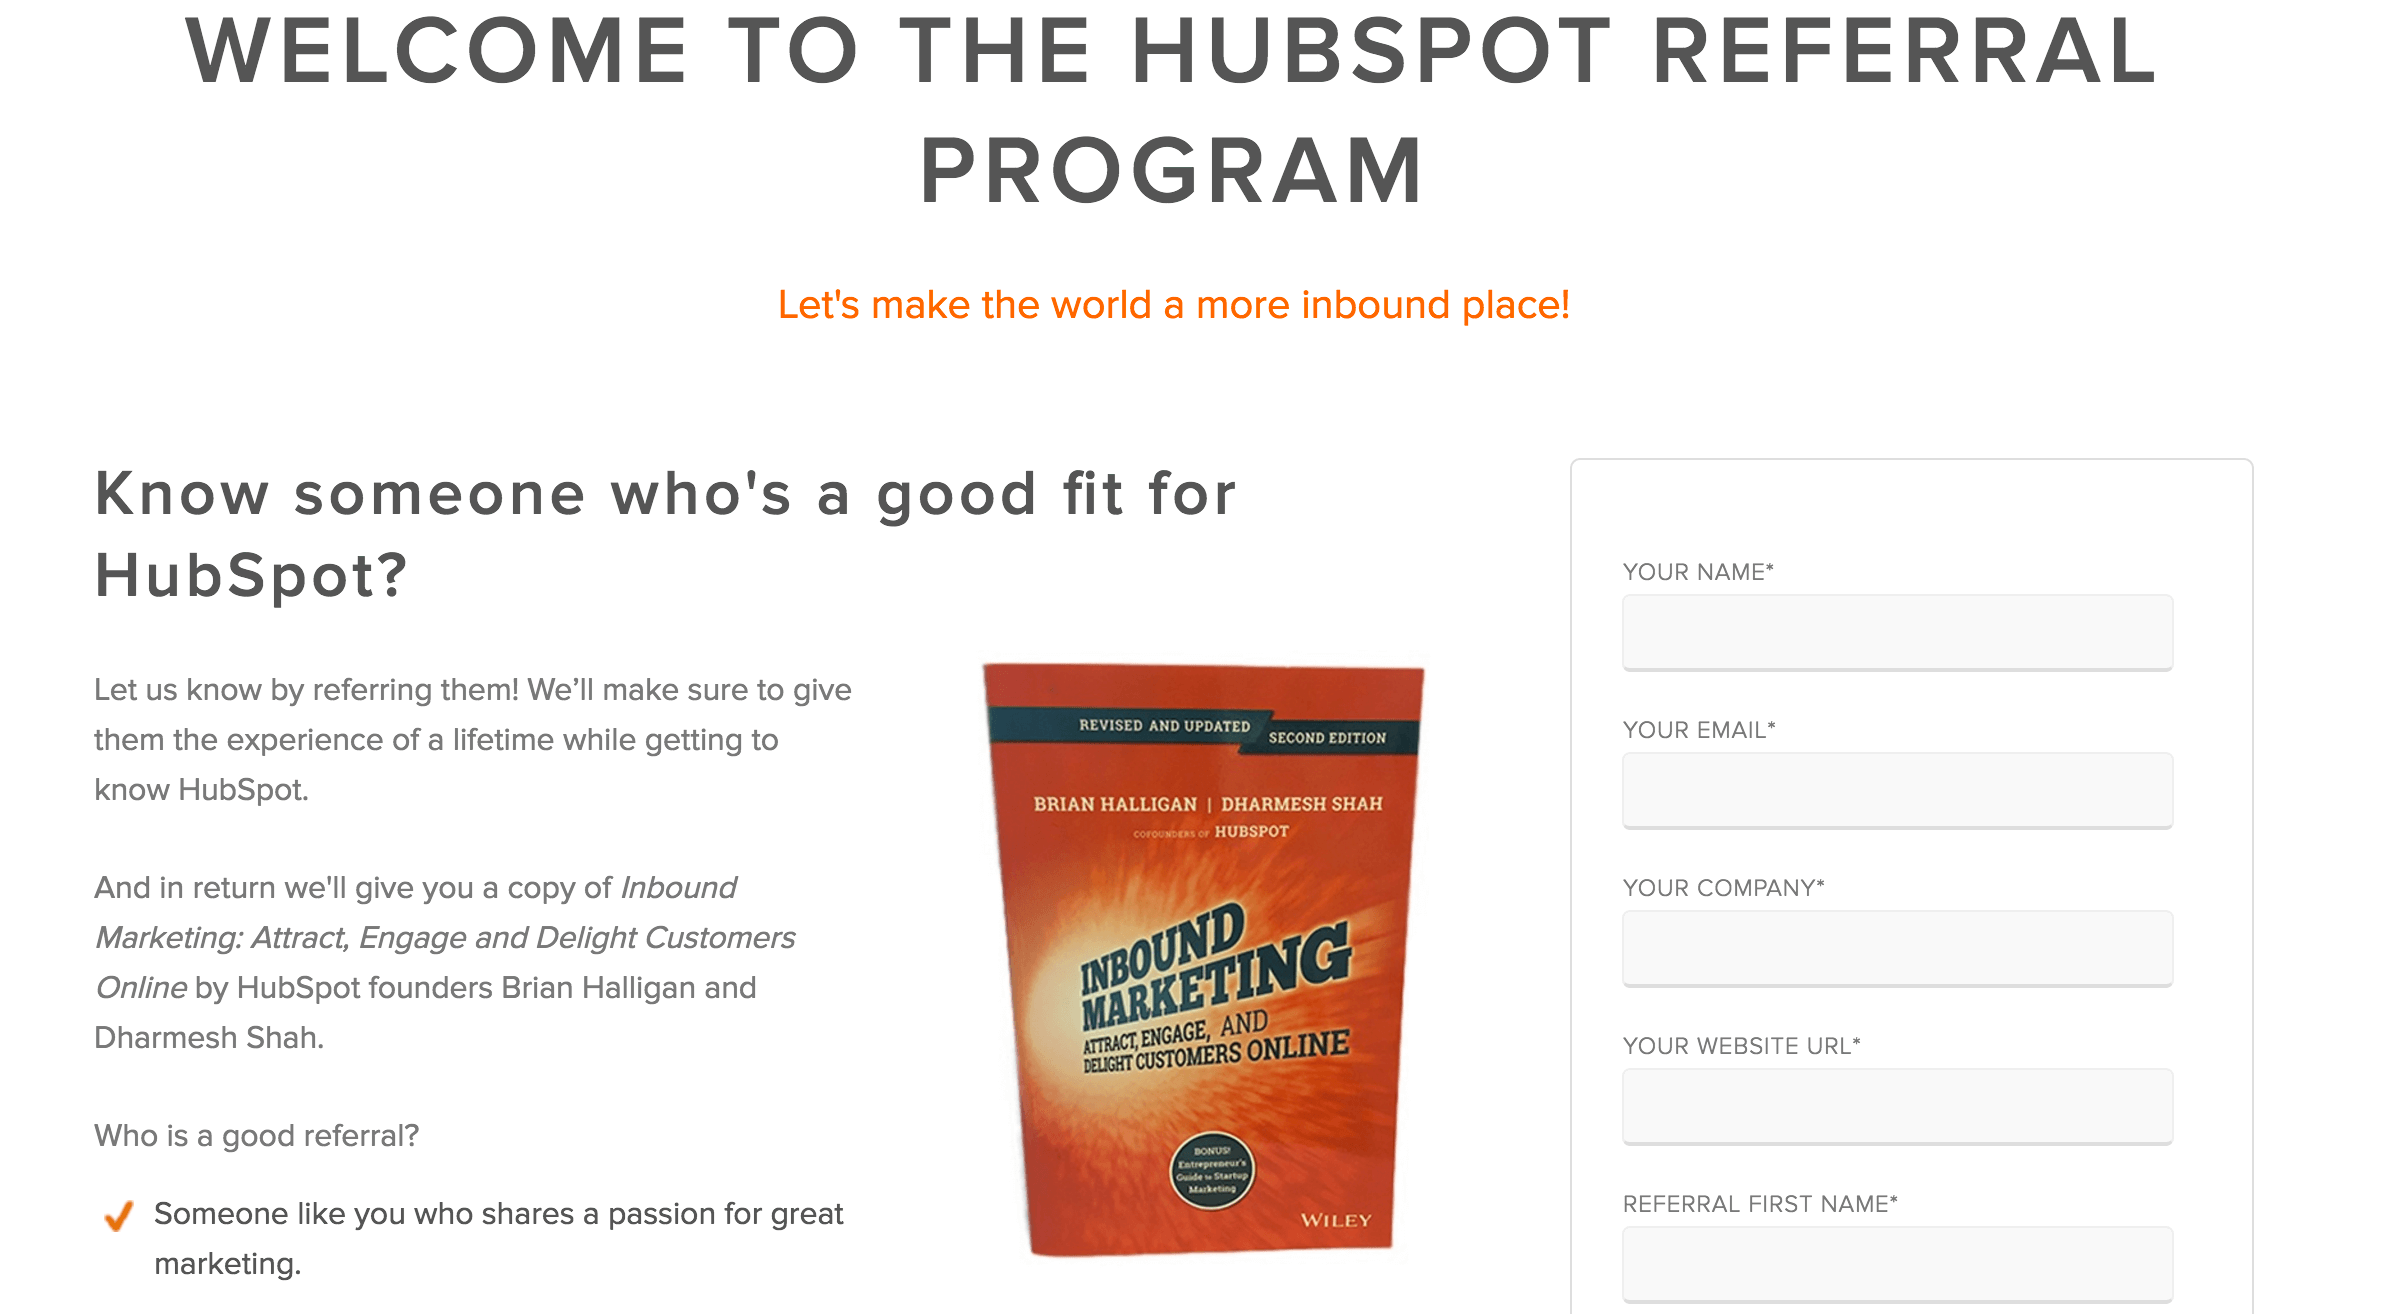 39-hubspot-referral-program